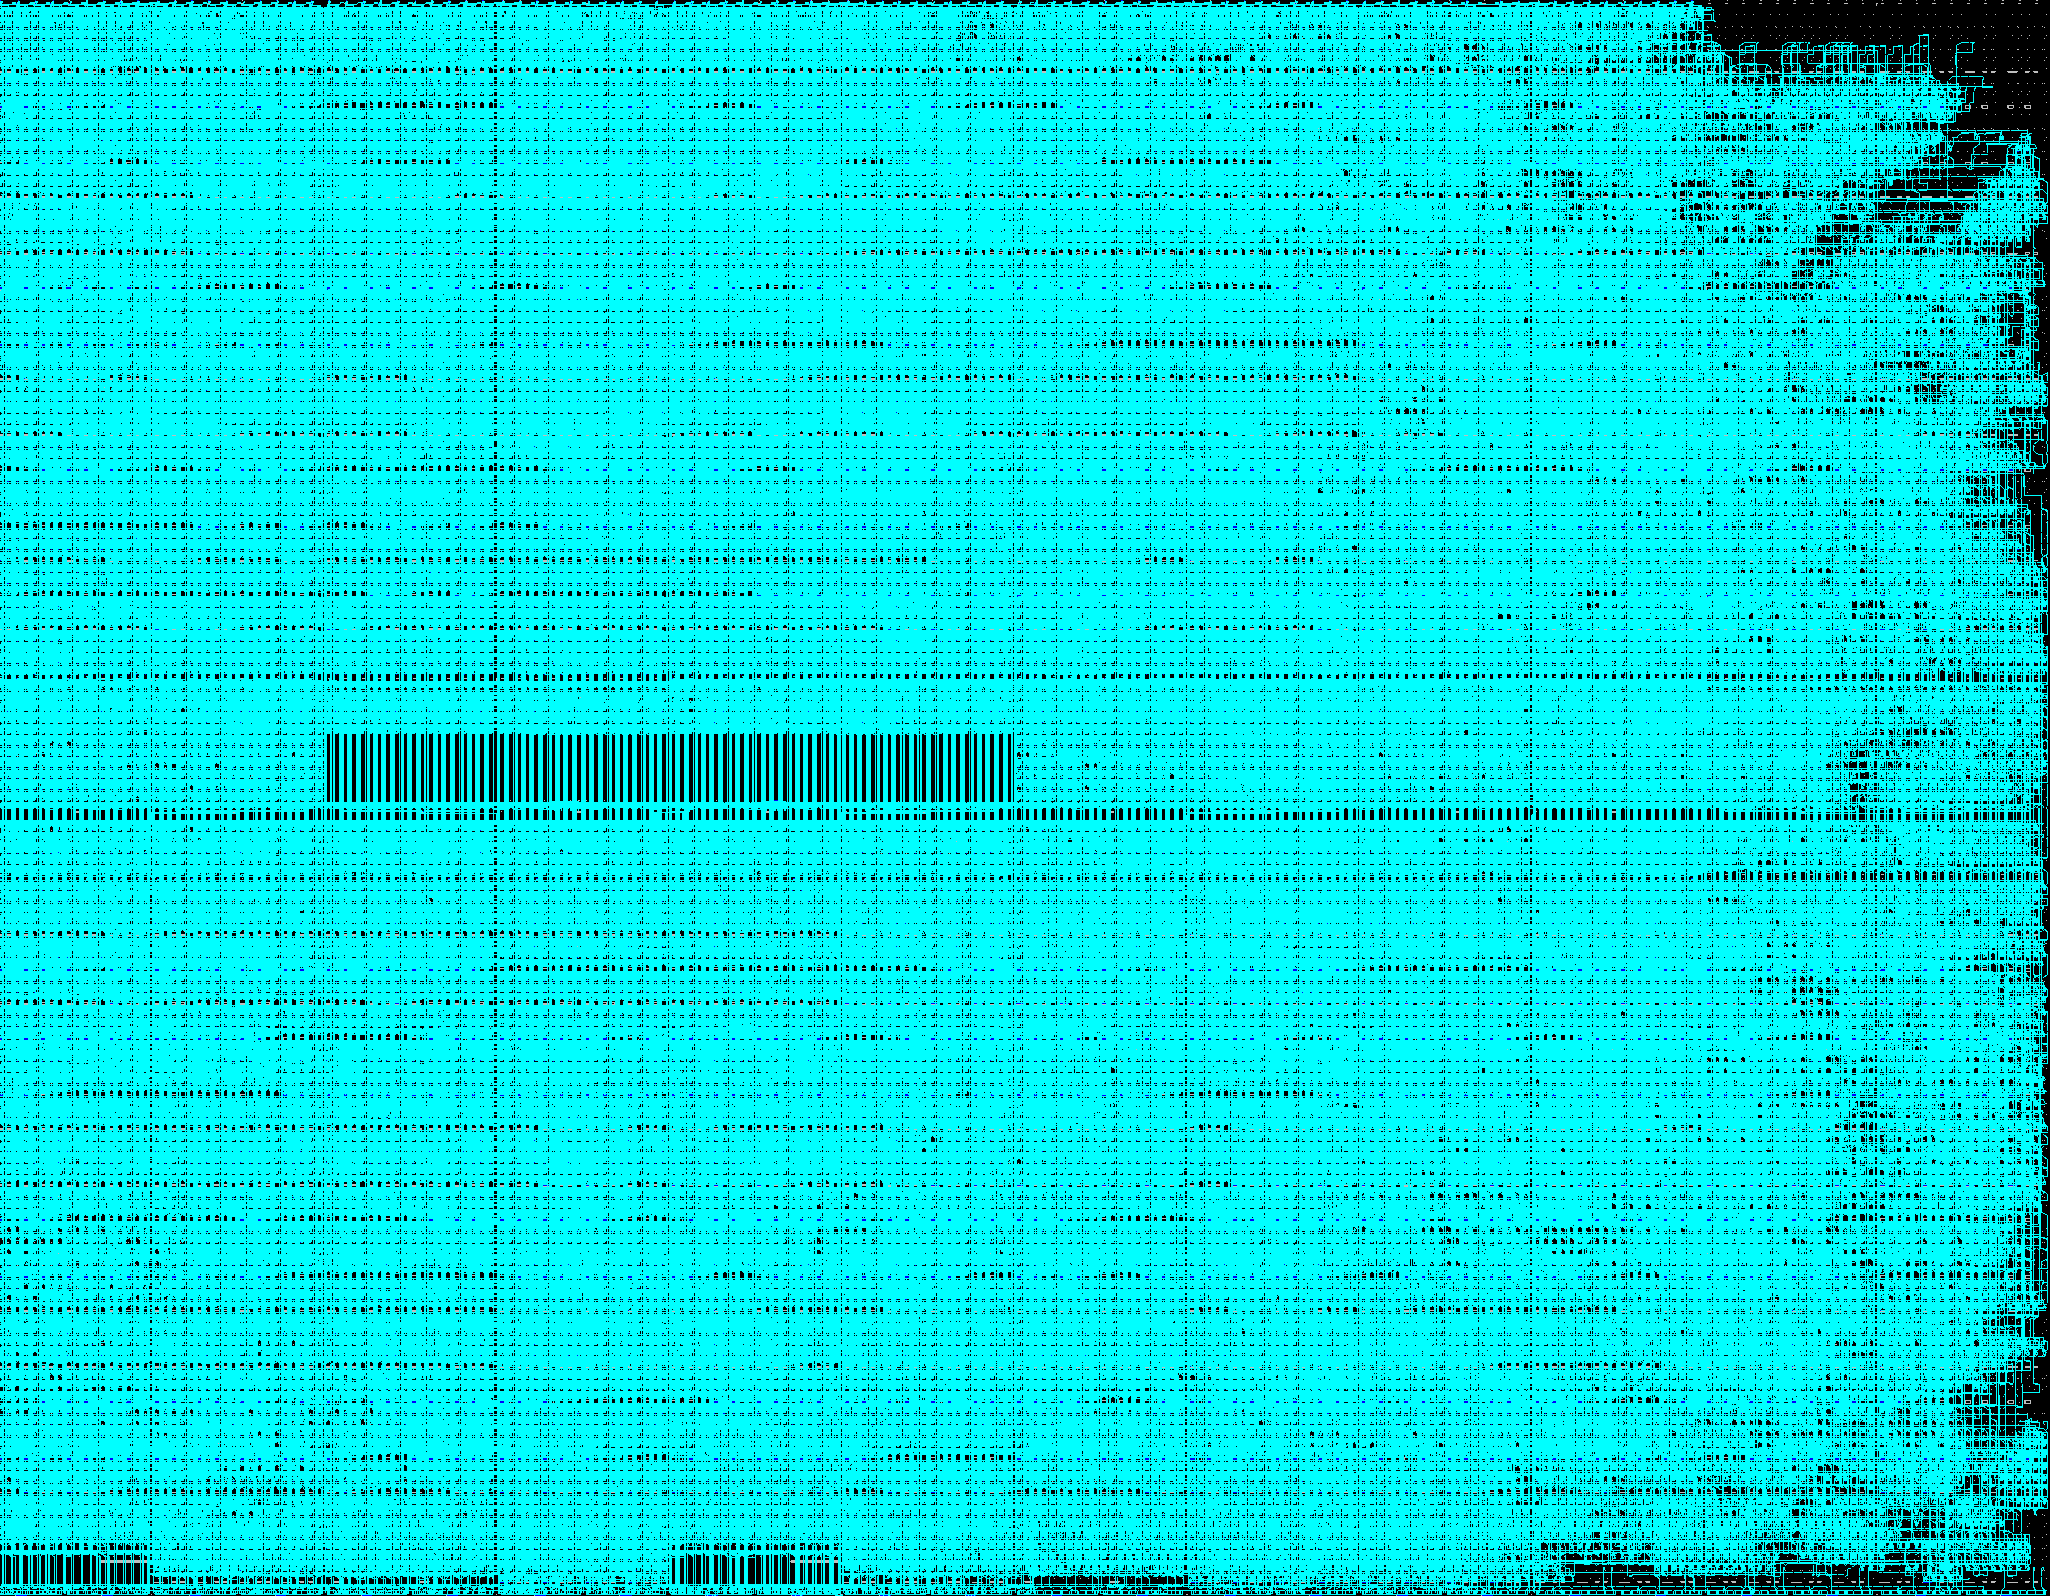 FPGAs: Übersicht ½ Mio Flip-Flops 2000